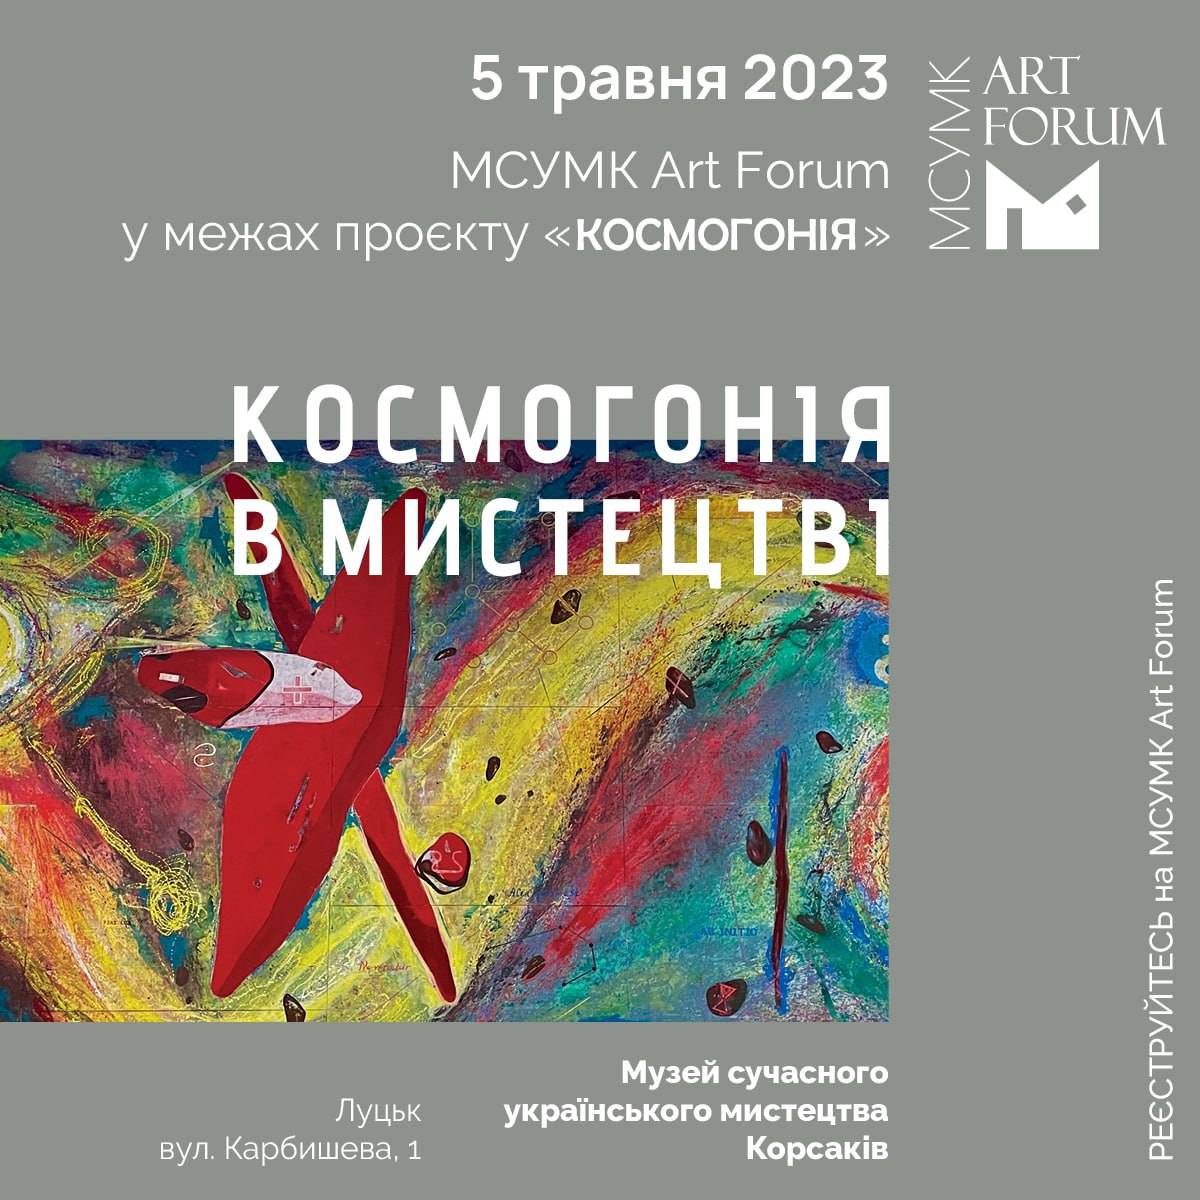 (Українська) 5 травня о 10:00 запрошуємо у Музей Корсаків на міжнародний офлайн-форум МСУМК Art Forum із головною темою: «Космогонія в мистецтві»